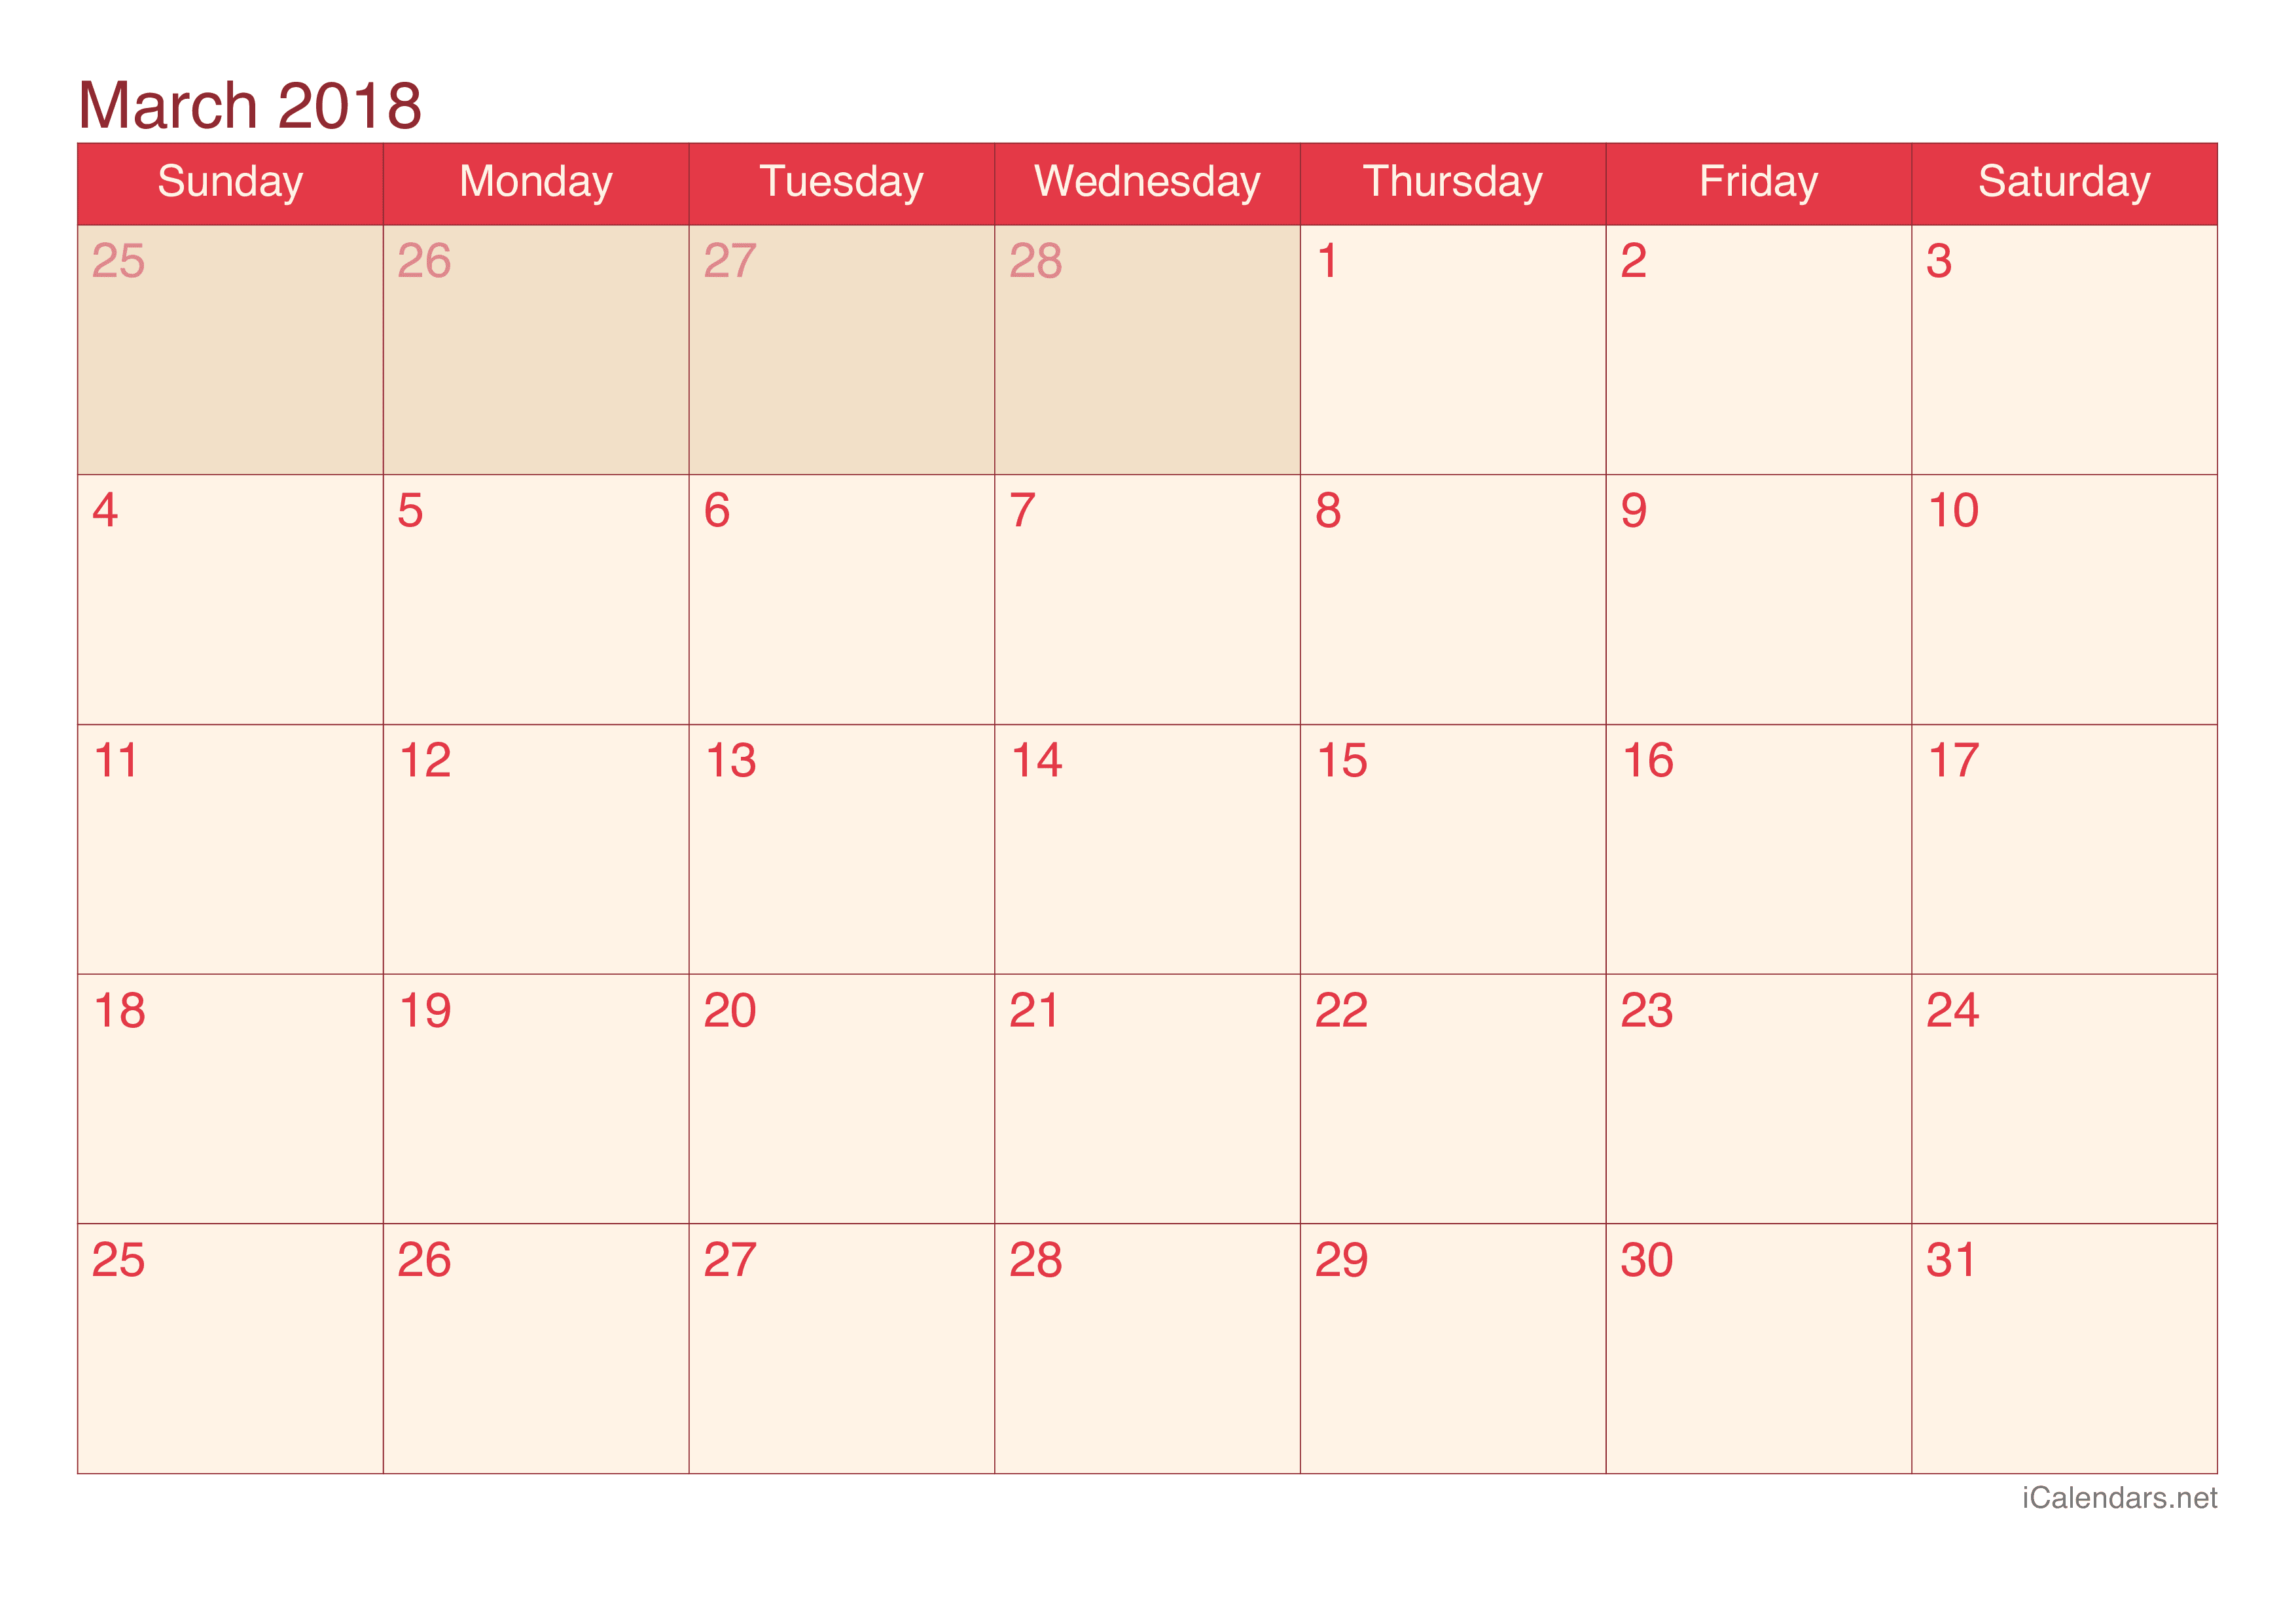 2018 March Calendar - Cherry